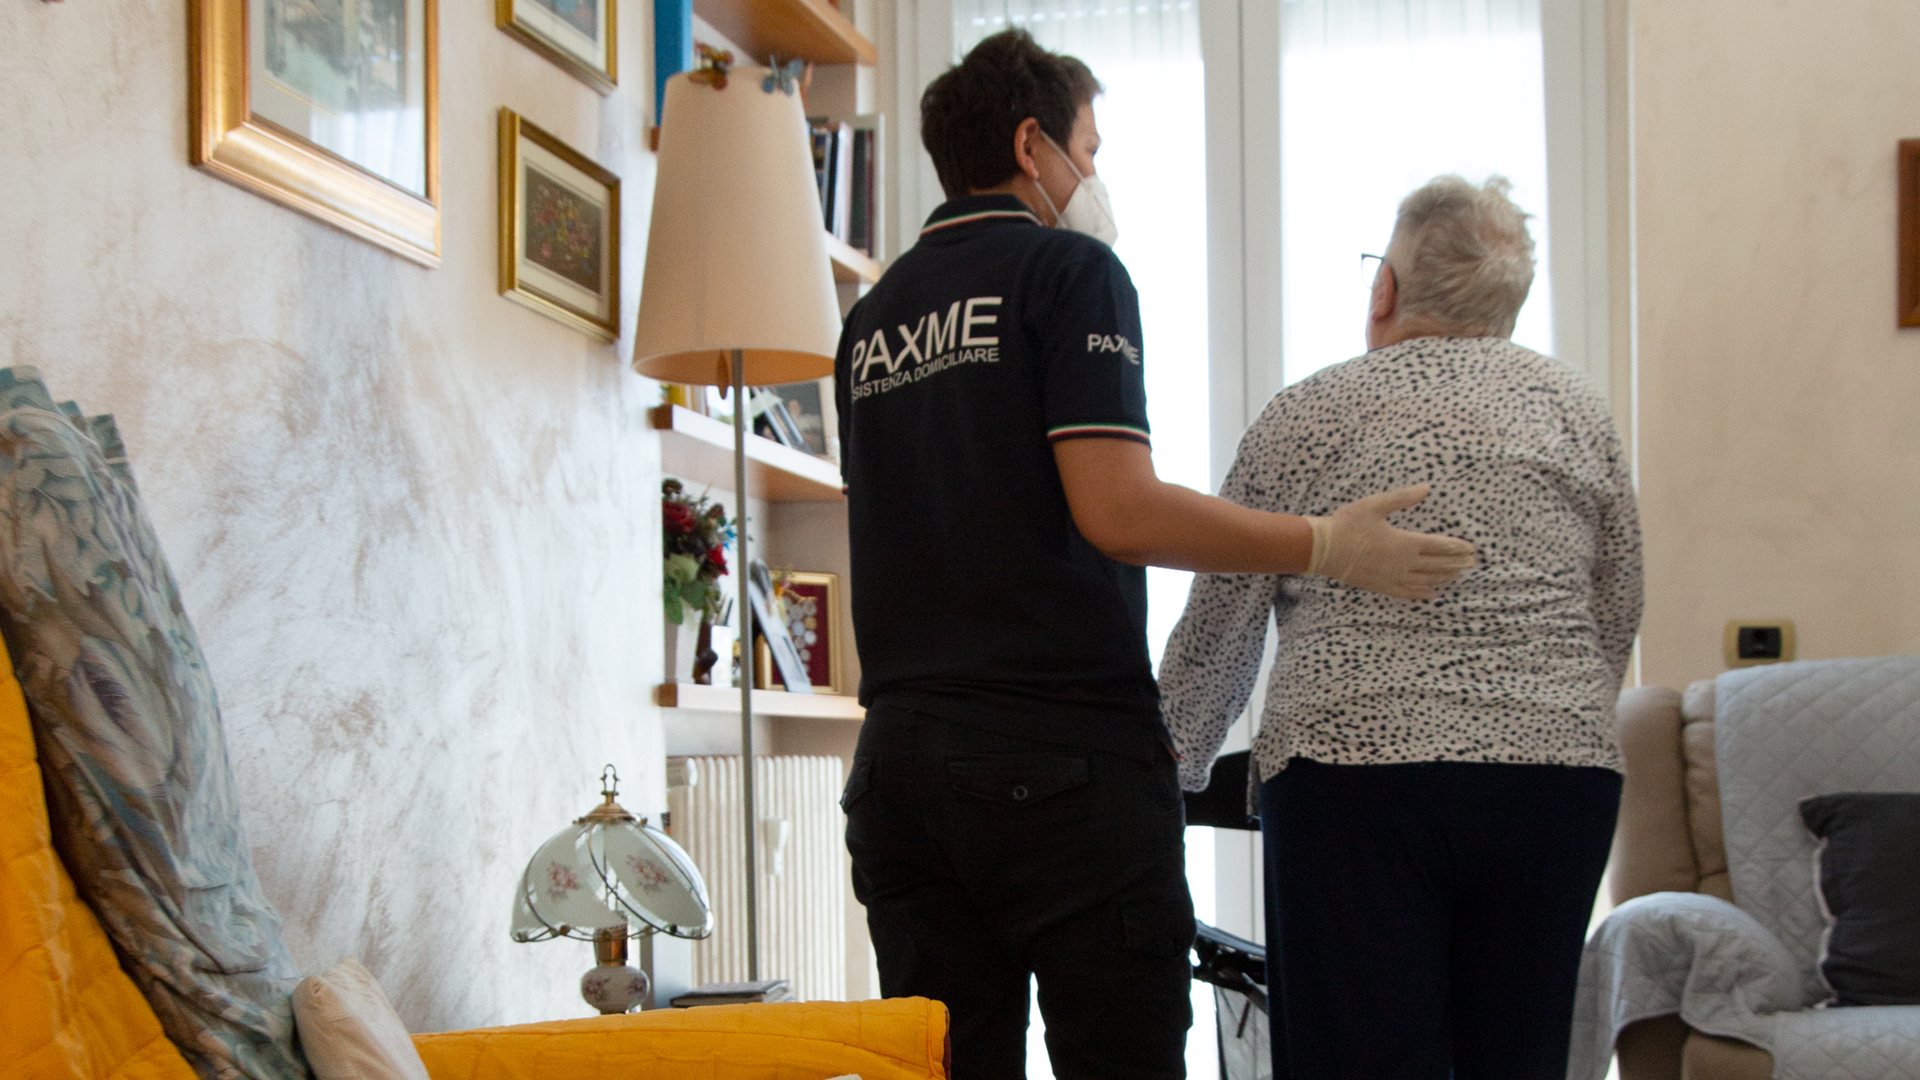 Dipendente Paxme che aiuta una persona anziana disabile